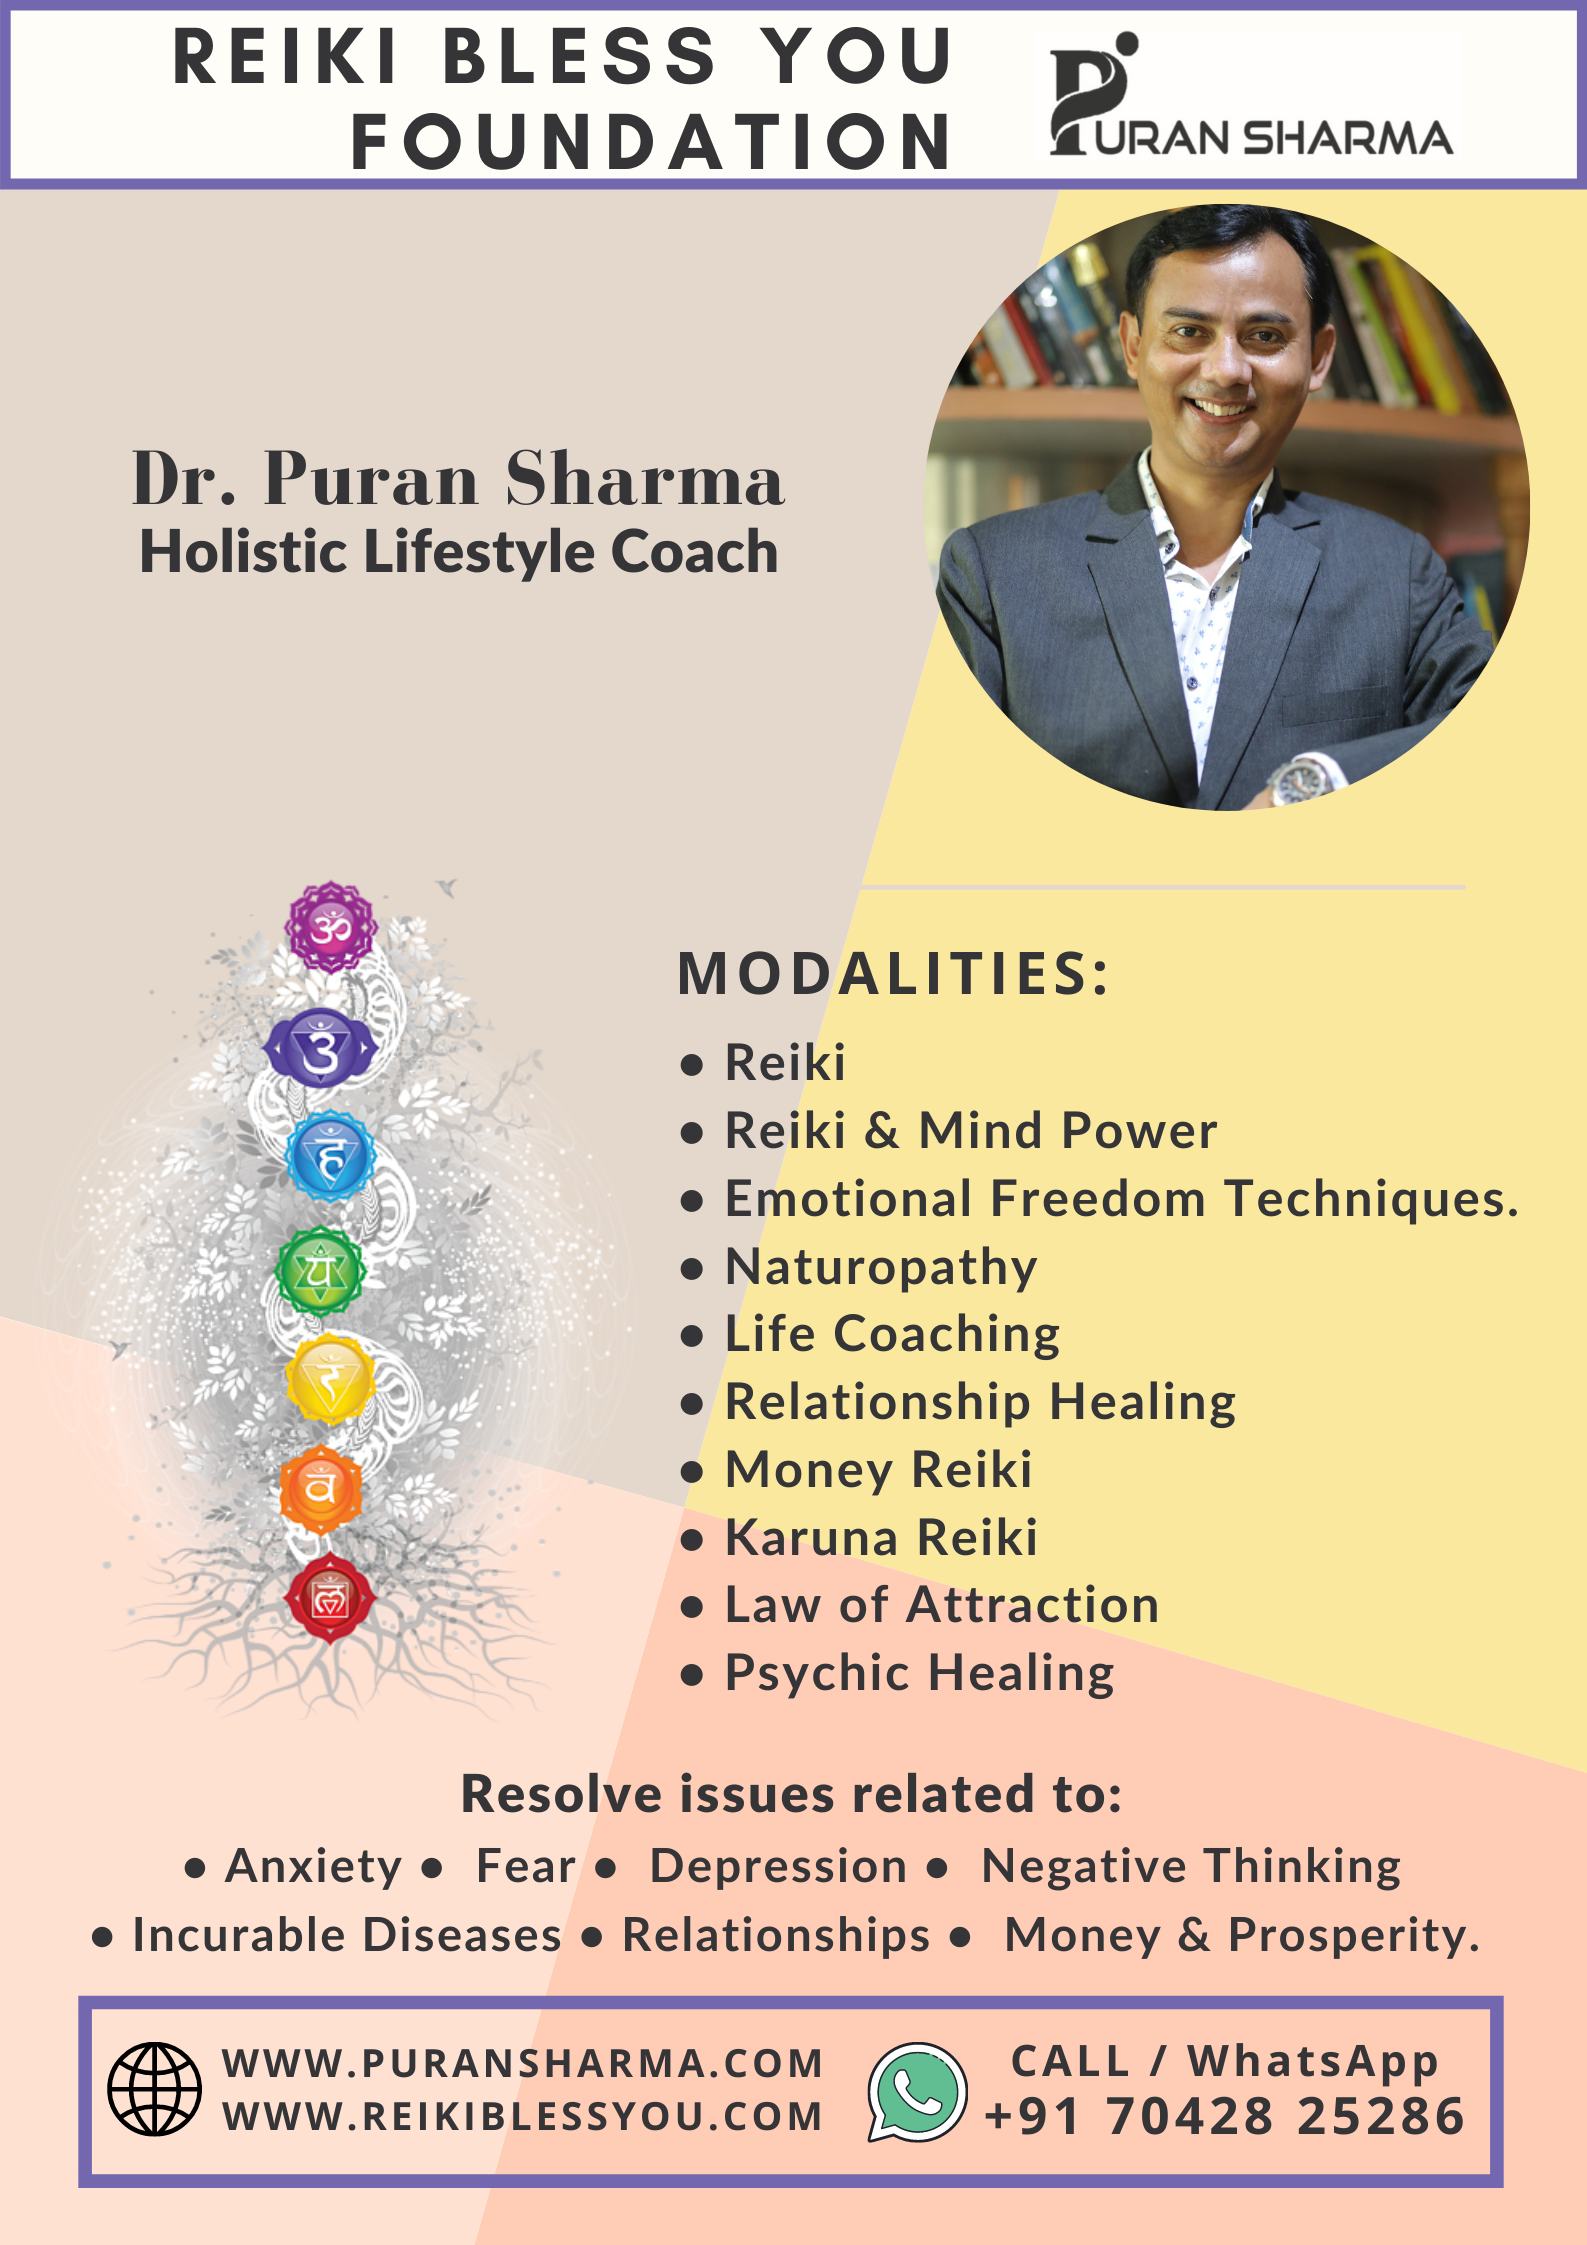 Dr. Puran Sharma - Reiki Bless You Foundation - Delhi